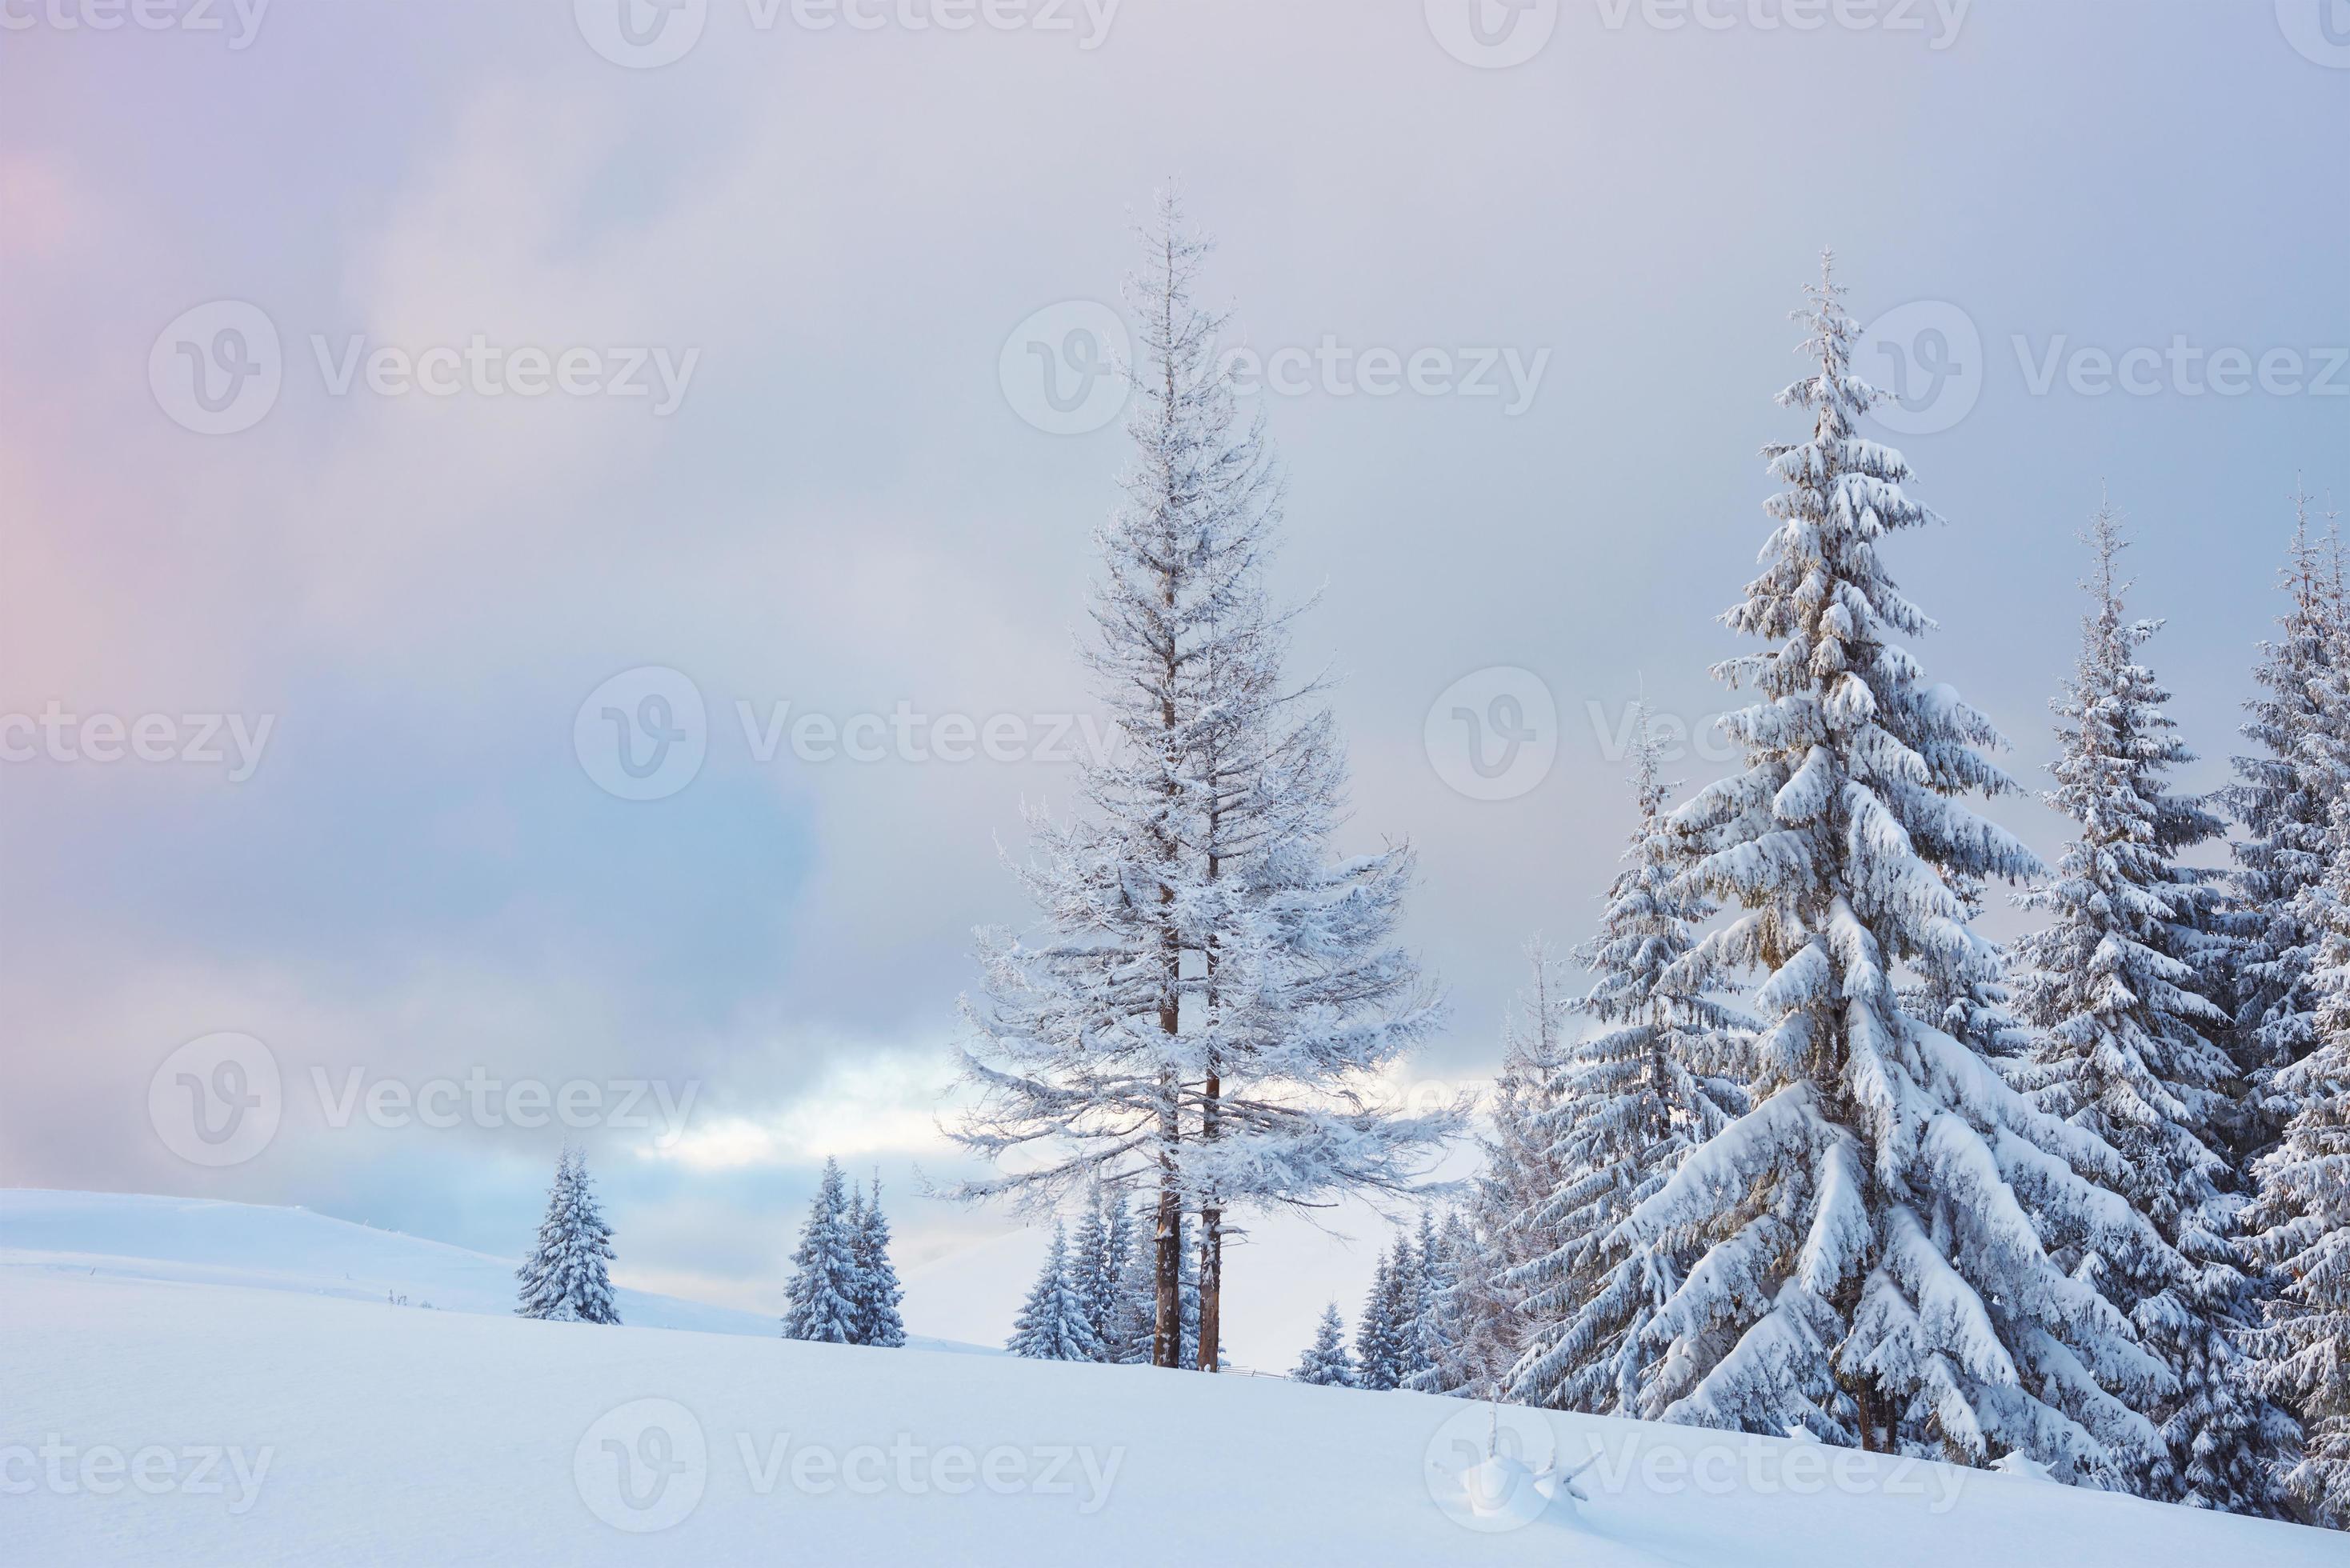 grande foto invernale nelle montagne dei Carpazi con abeti innevati. scena all'aperto colorata, concetto di celebrazione di felice anno nuovo. foto post-elaborata in stile artistico